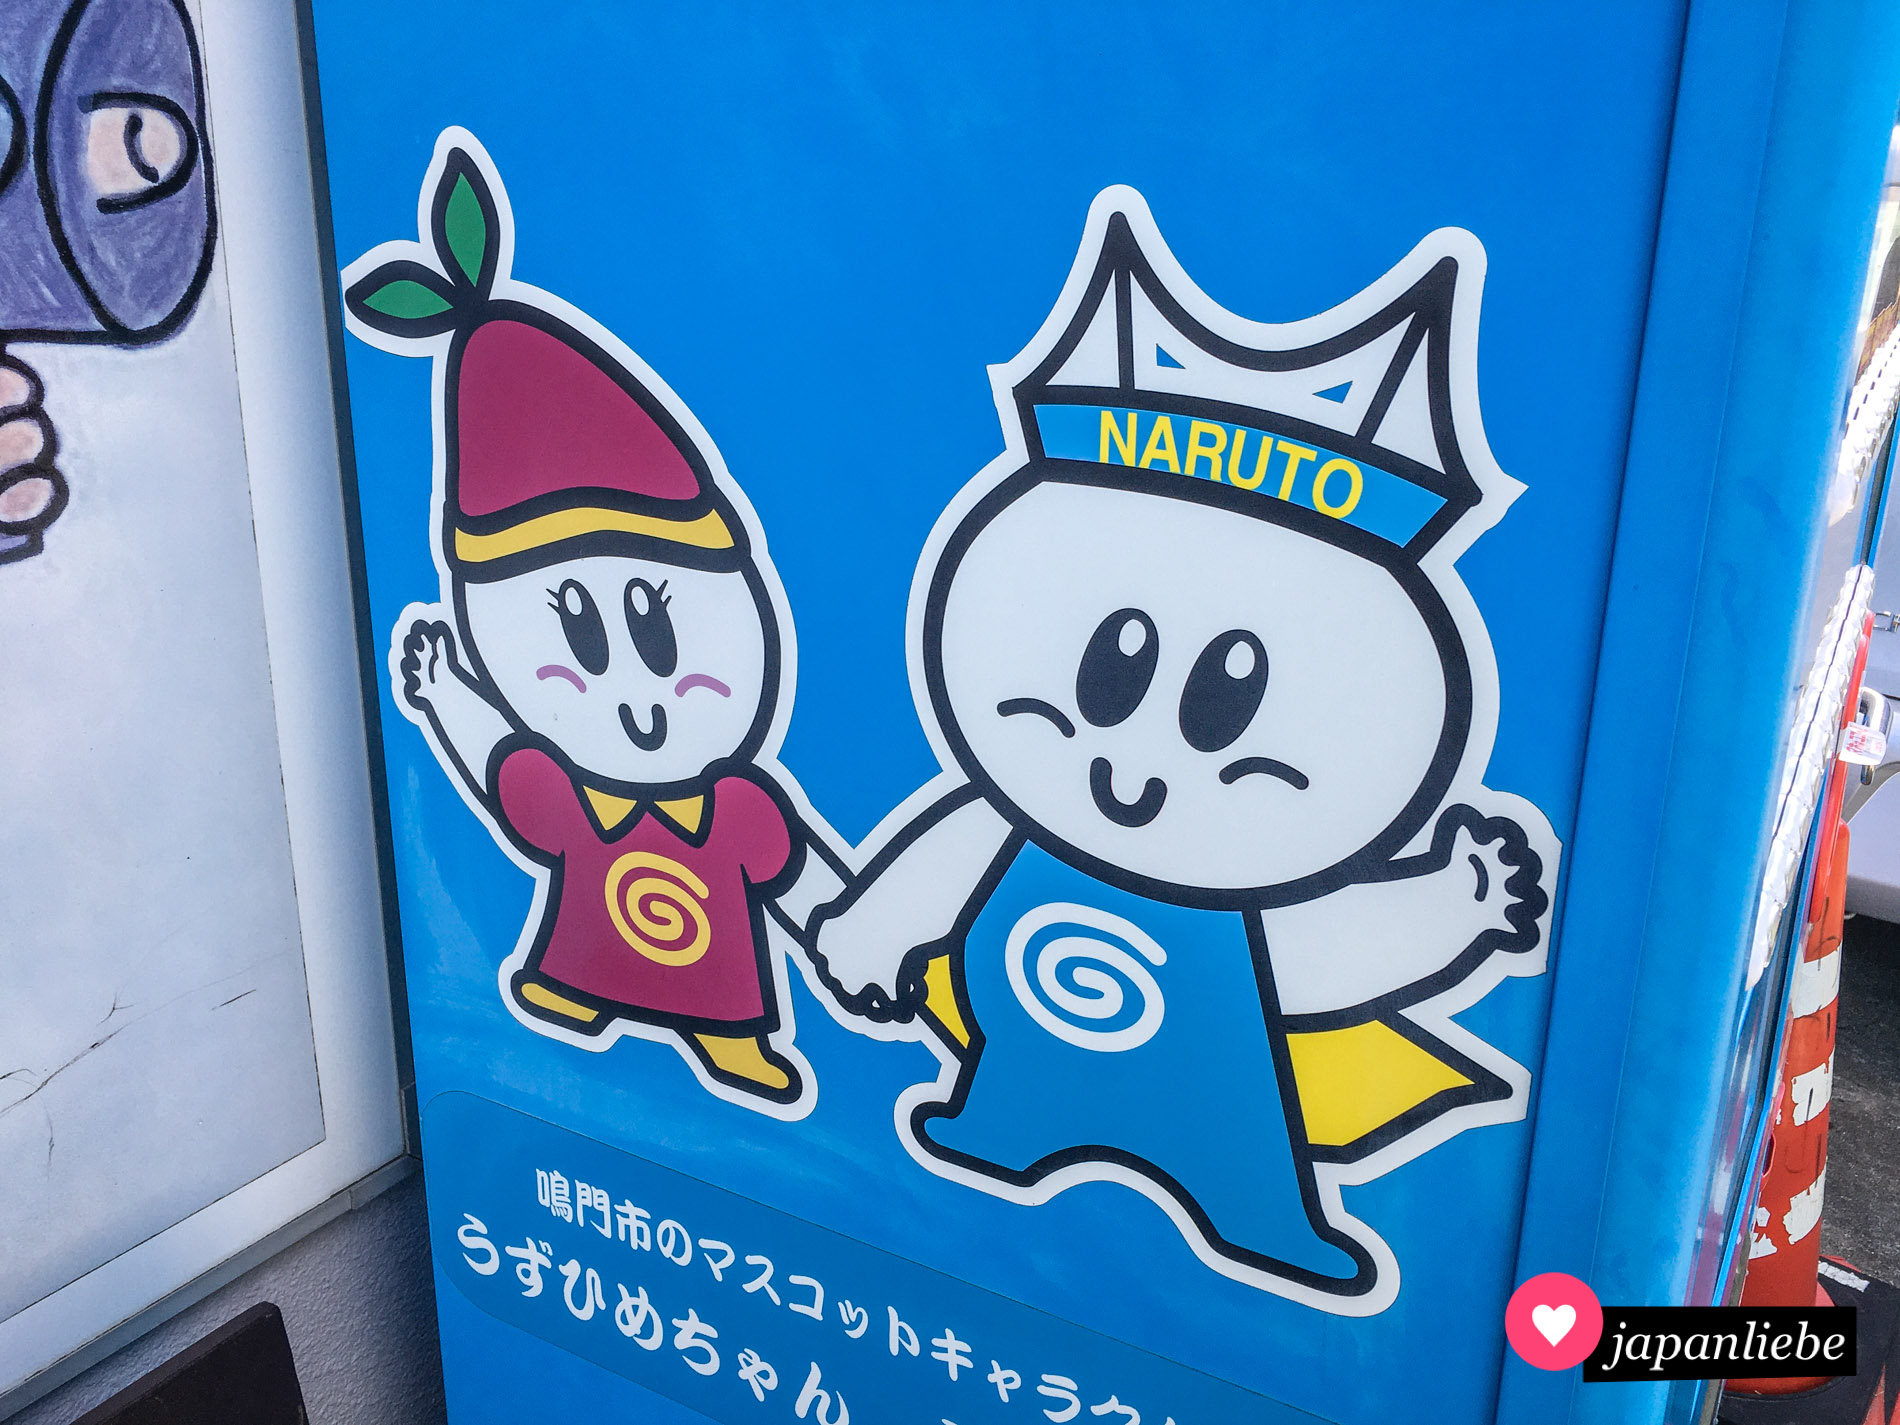 Die Maskottchen von Naruto stellen eine Süßkartoffel und die Ōnaruto-Brücke dar. Beide tragen einen angedeuteten Strudel als Zeichen auf dem Bauch.